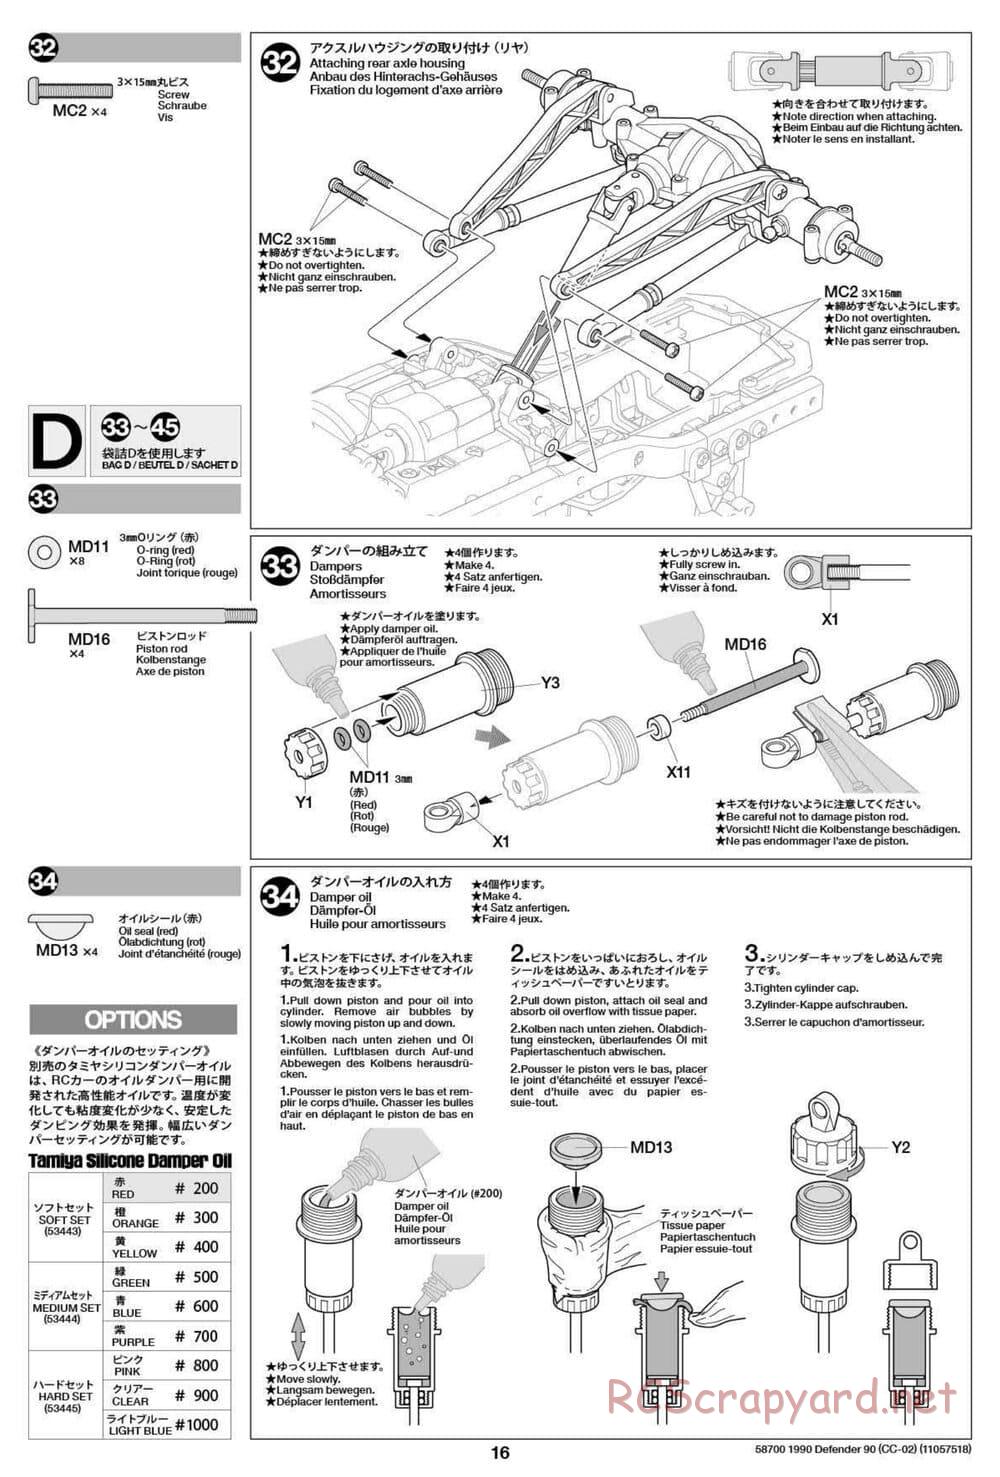 Tamiya - 1990 Land Rover Defender 90 - CC-02 Chassis - Manual - Page 16